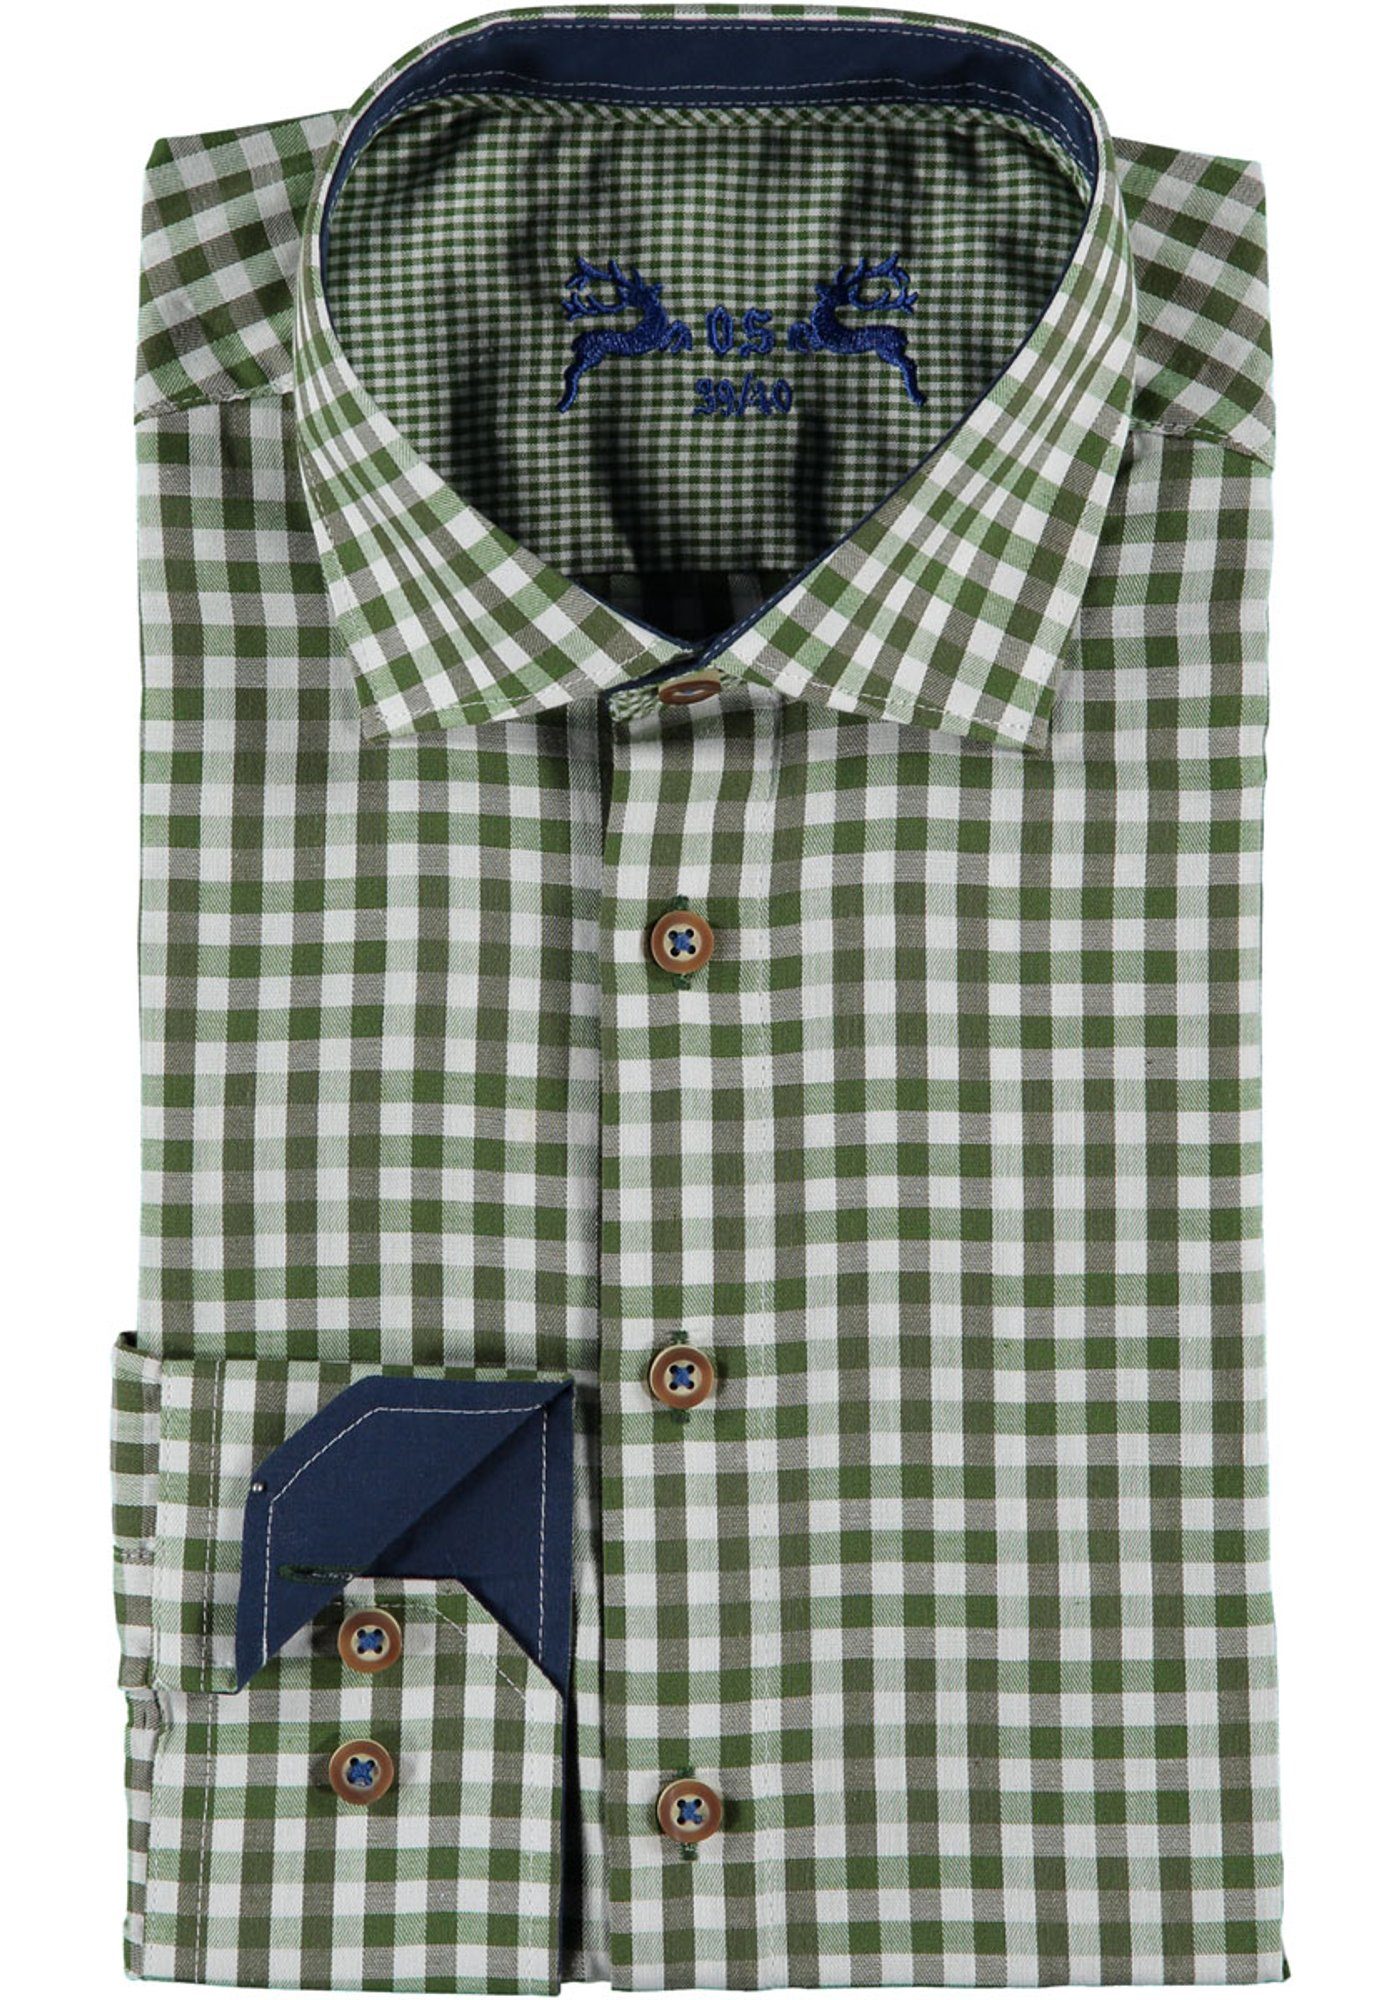 OS-Trachten Trachtenhemd Merogu mit extra langen Ärmeln, Manschetten in Kontraststoff khaki/schlamm